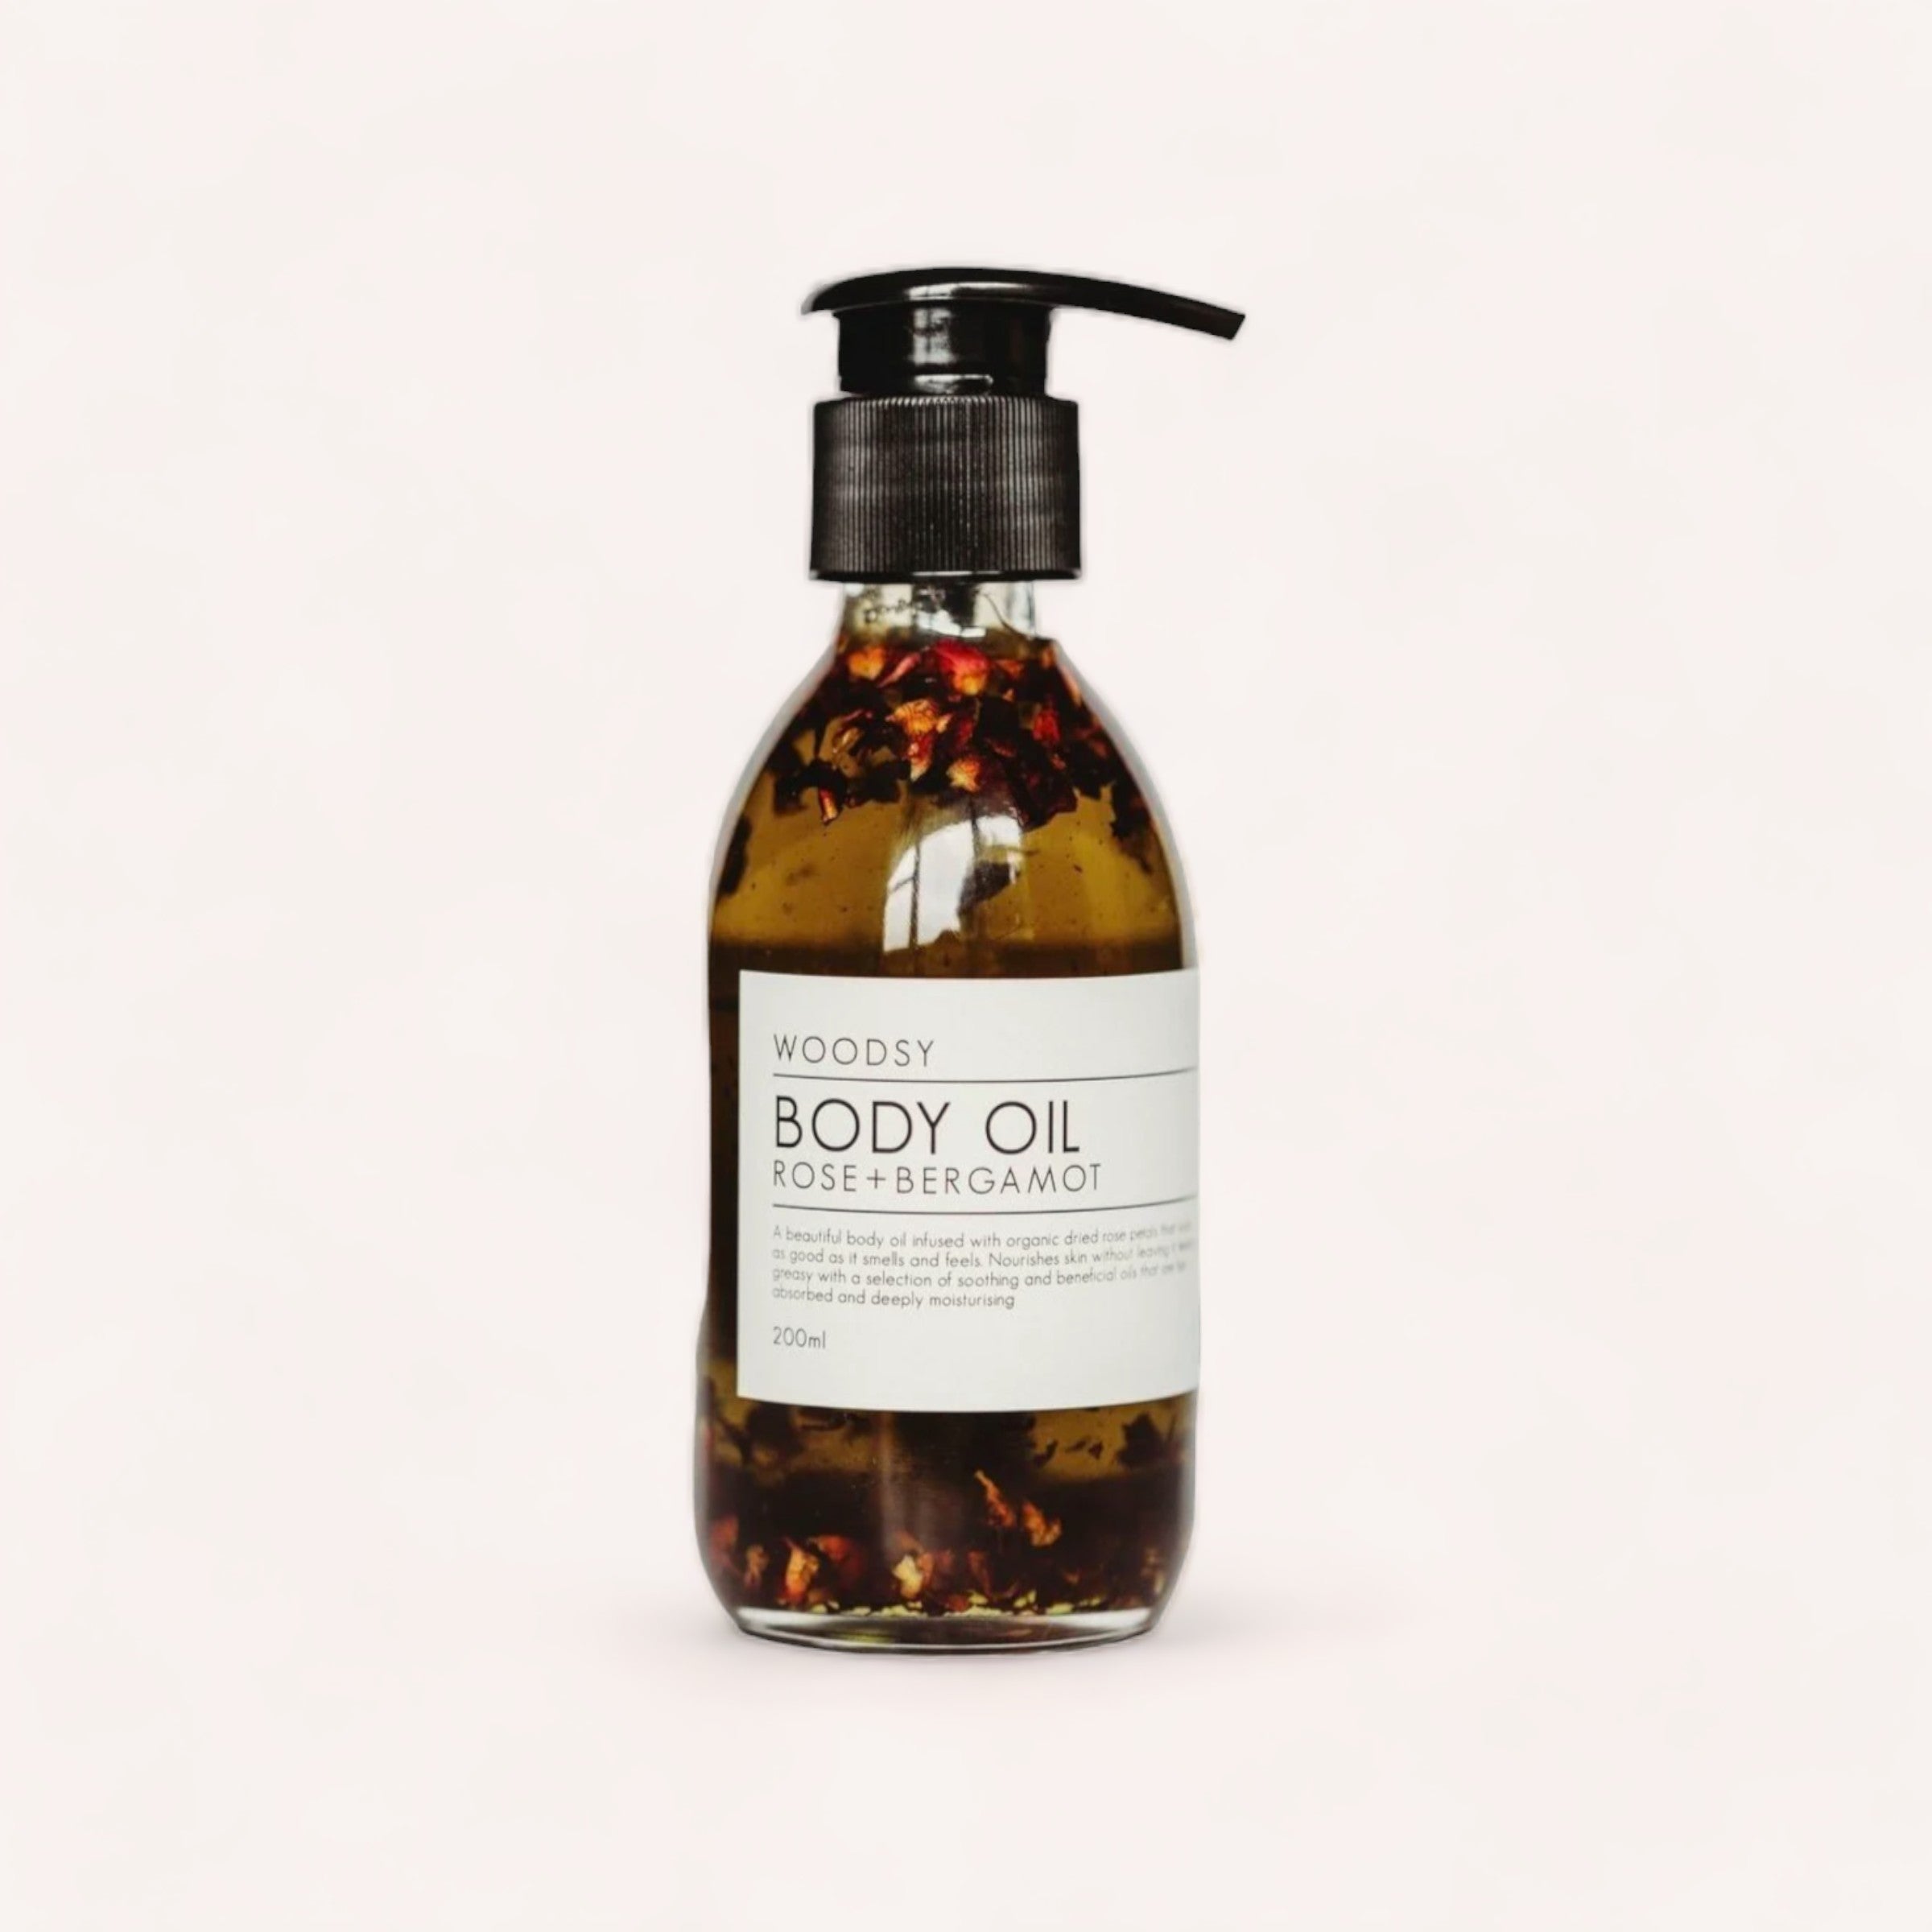 rose & bergamot body oil by woodsy botanics